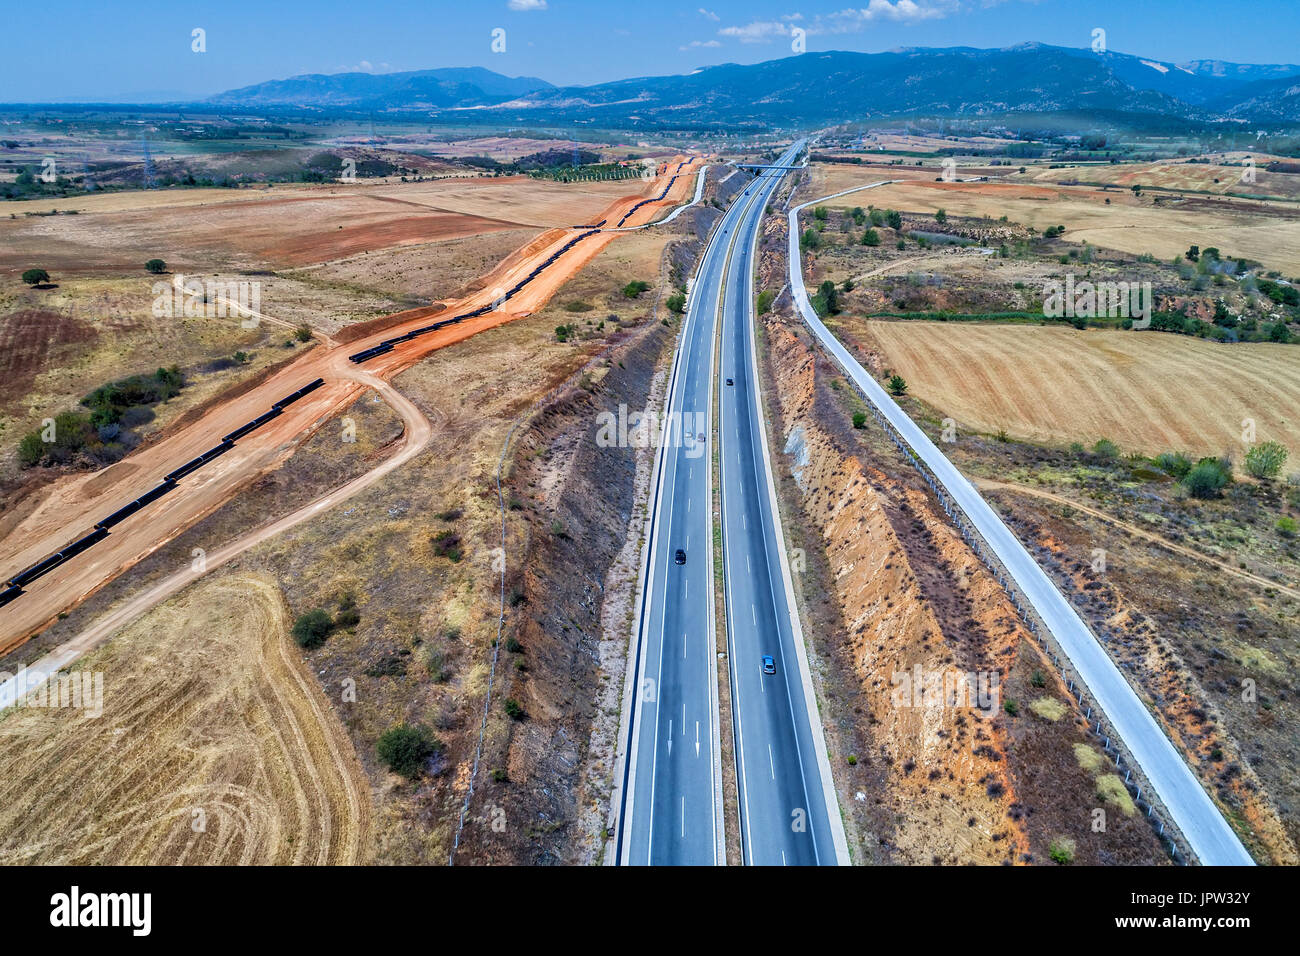 Vue aérienne de la route Egnatia Odos (national) qui traverse la Grèce de l'Évros à Igoumenitsa Banque D'Images